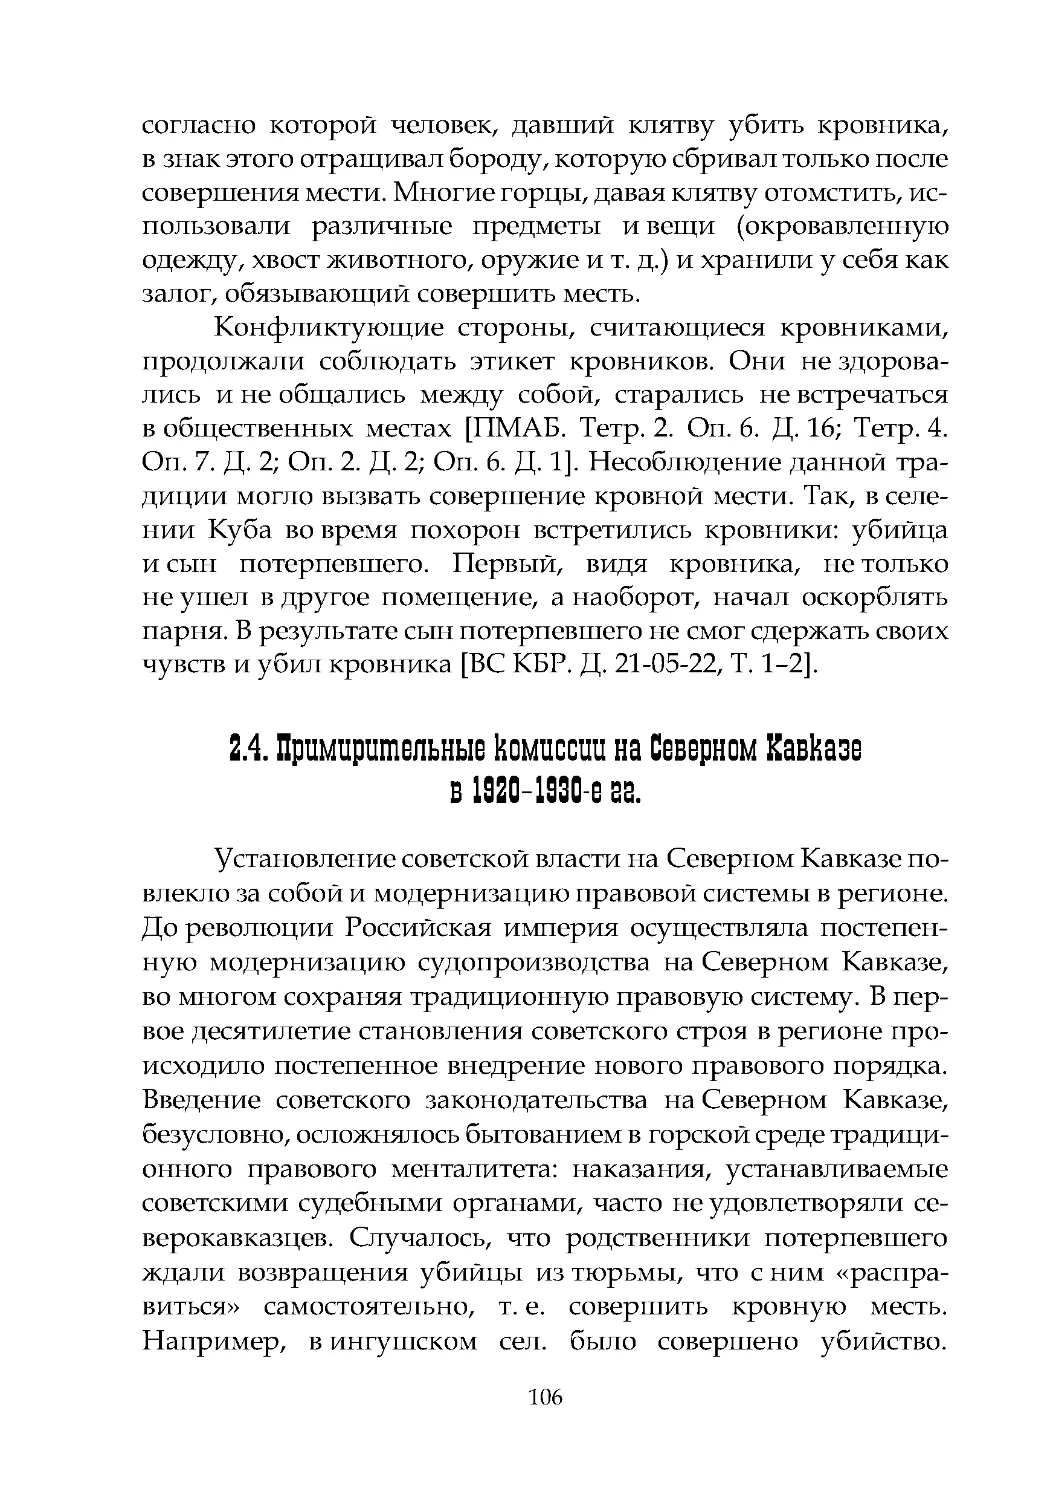 2.4. Примирительные комиссии на Северном Кавказе в 1920–1930-е гг.